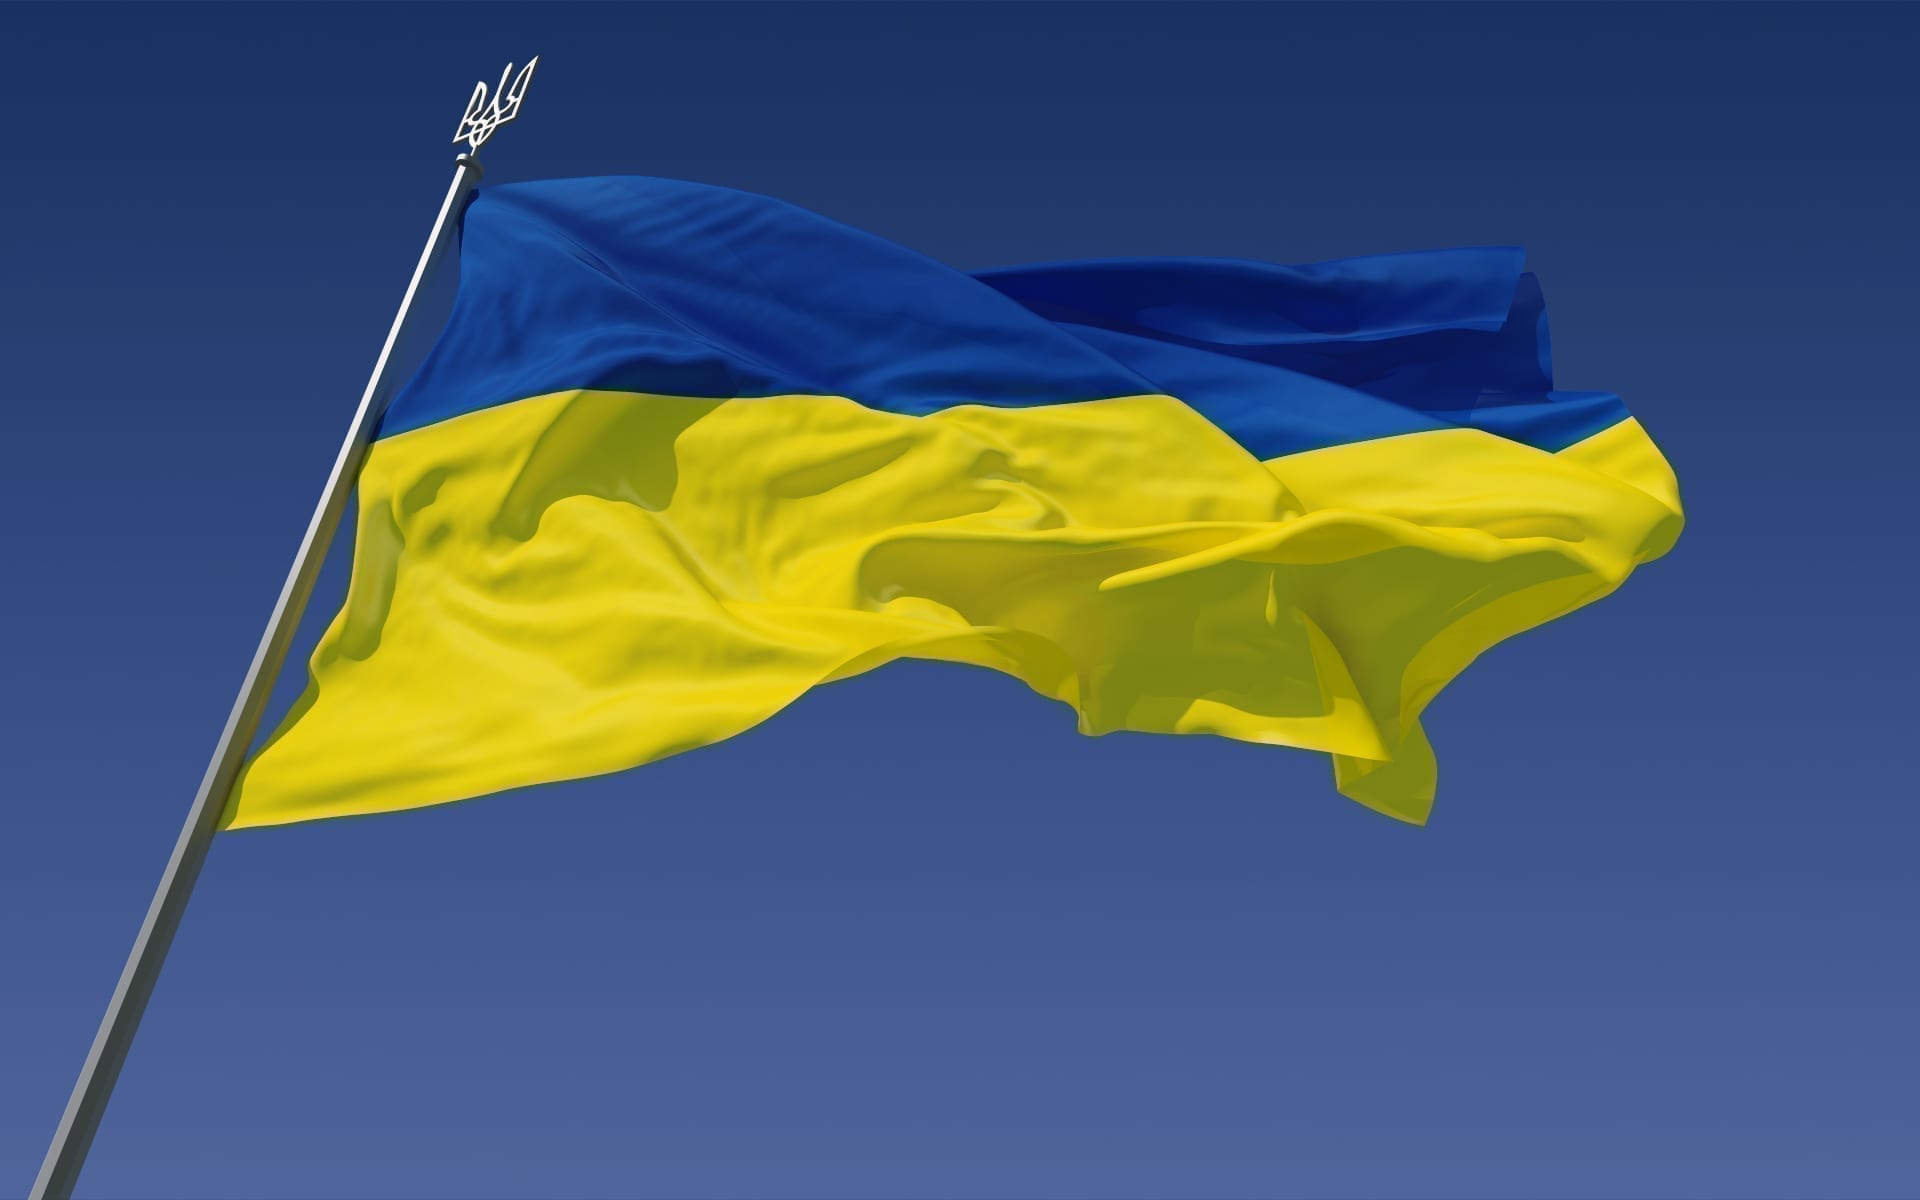 Оголошено конкурс з розробки айдентики до 30-ї річниці незалежності України